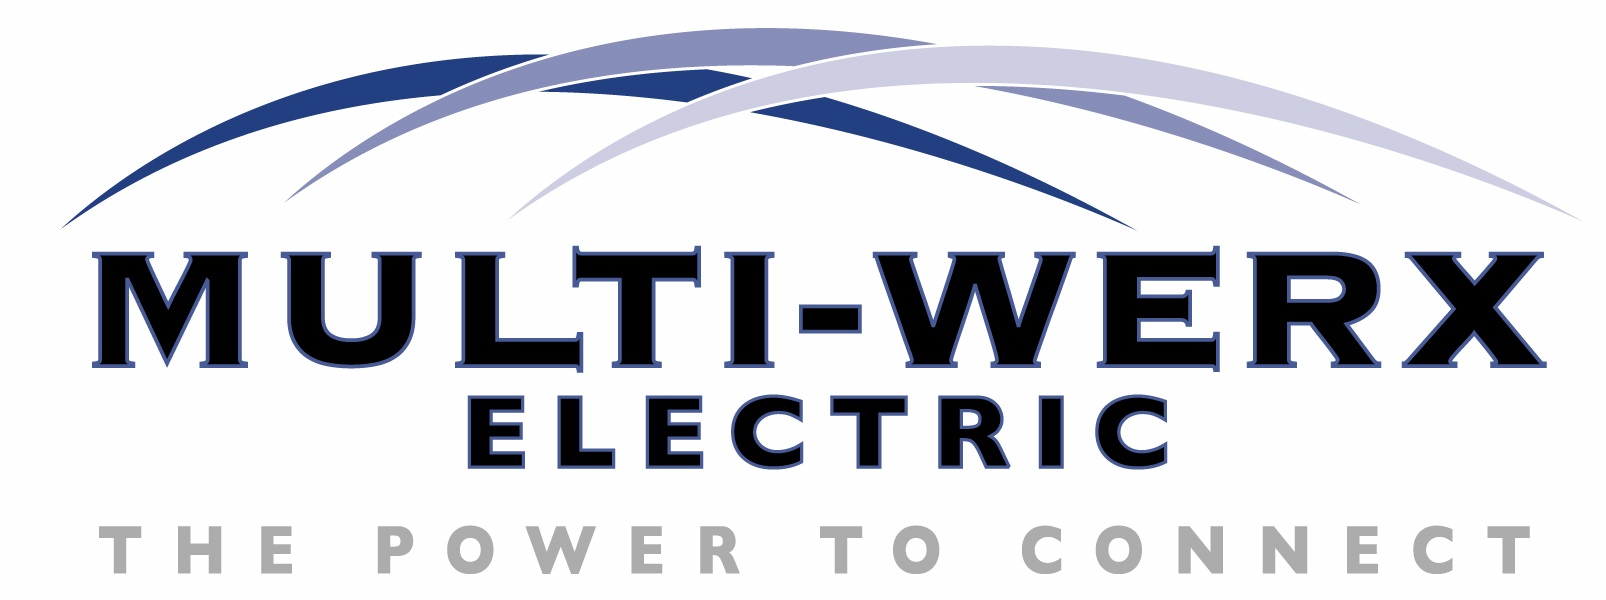 Multi-Werx Electric